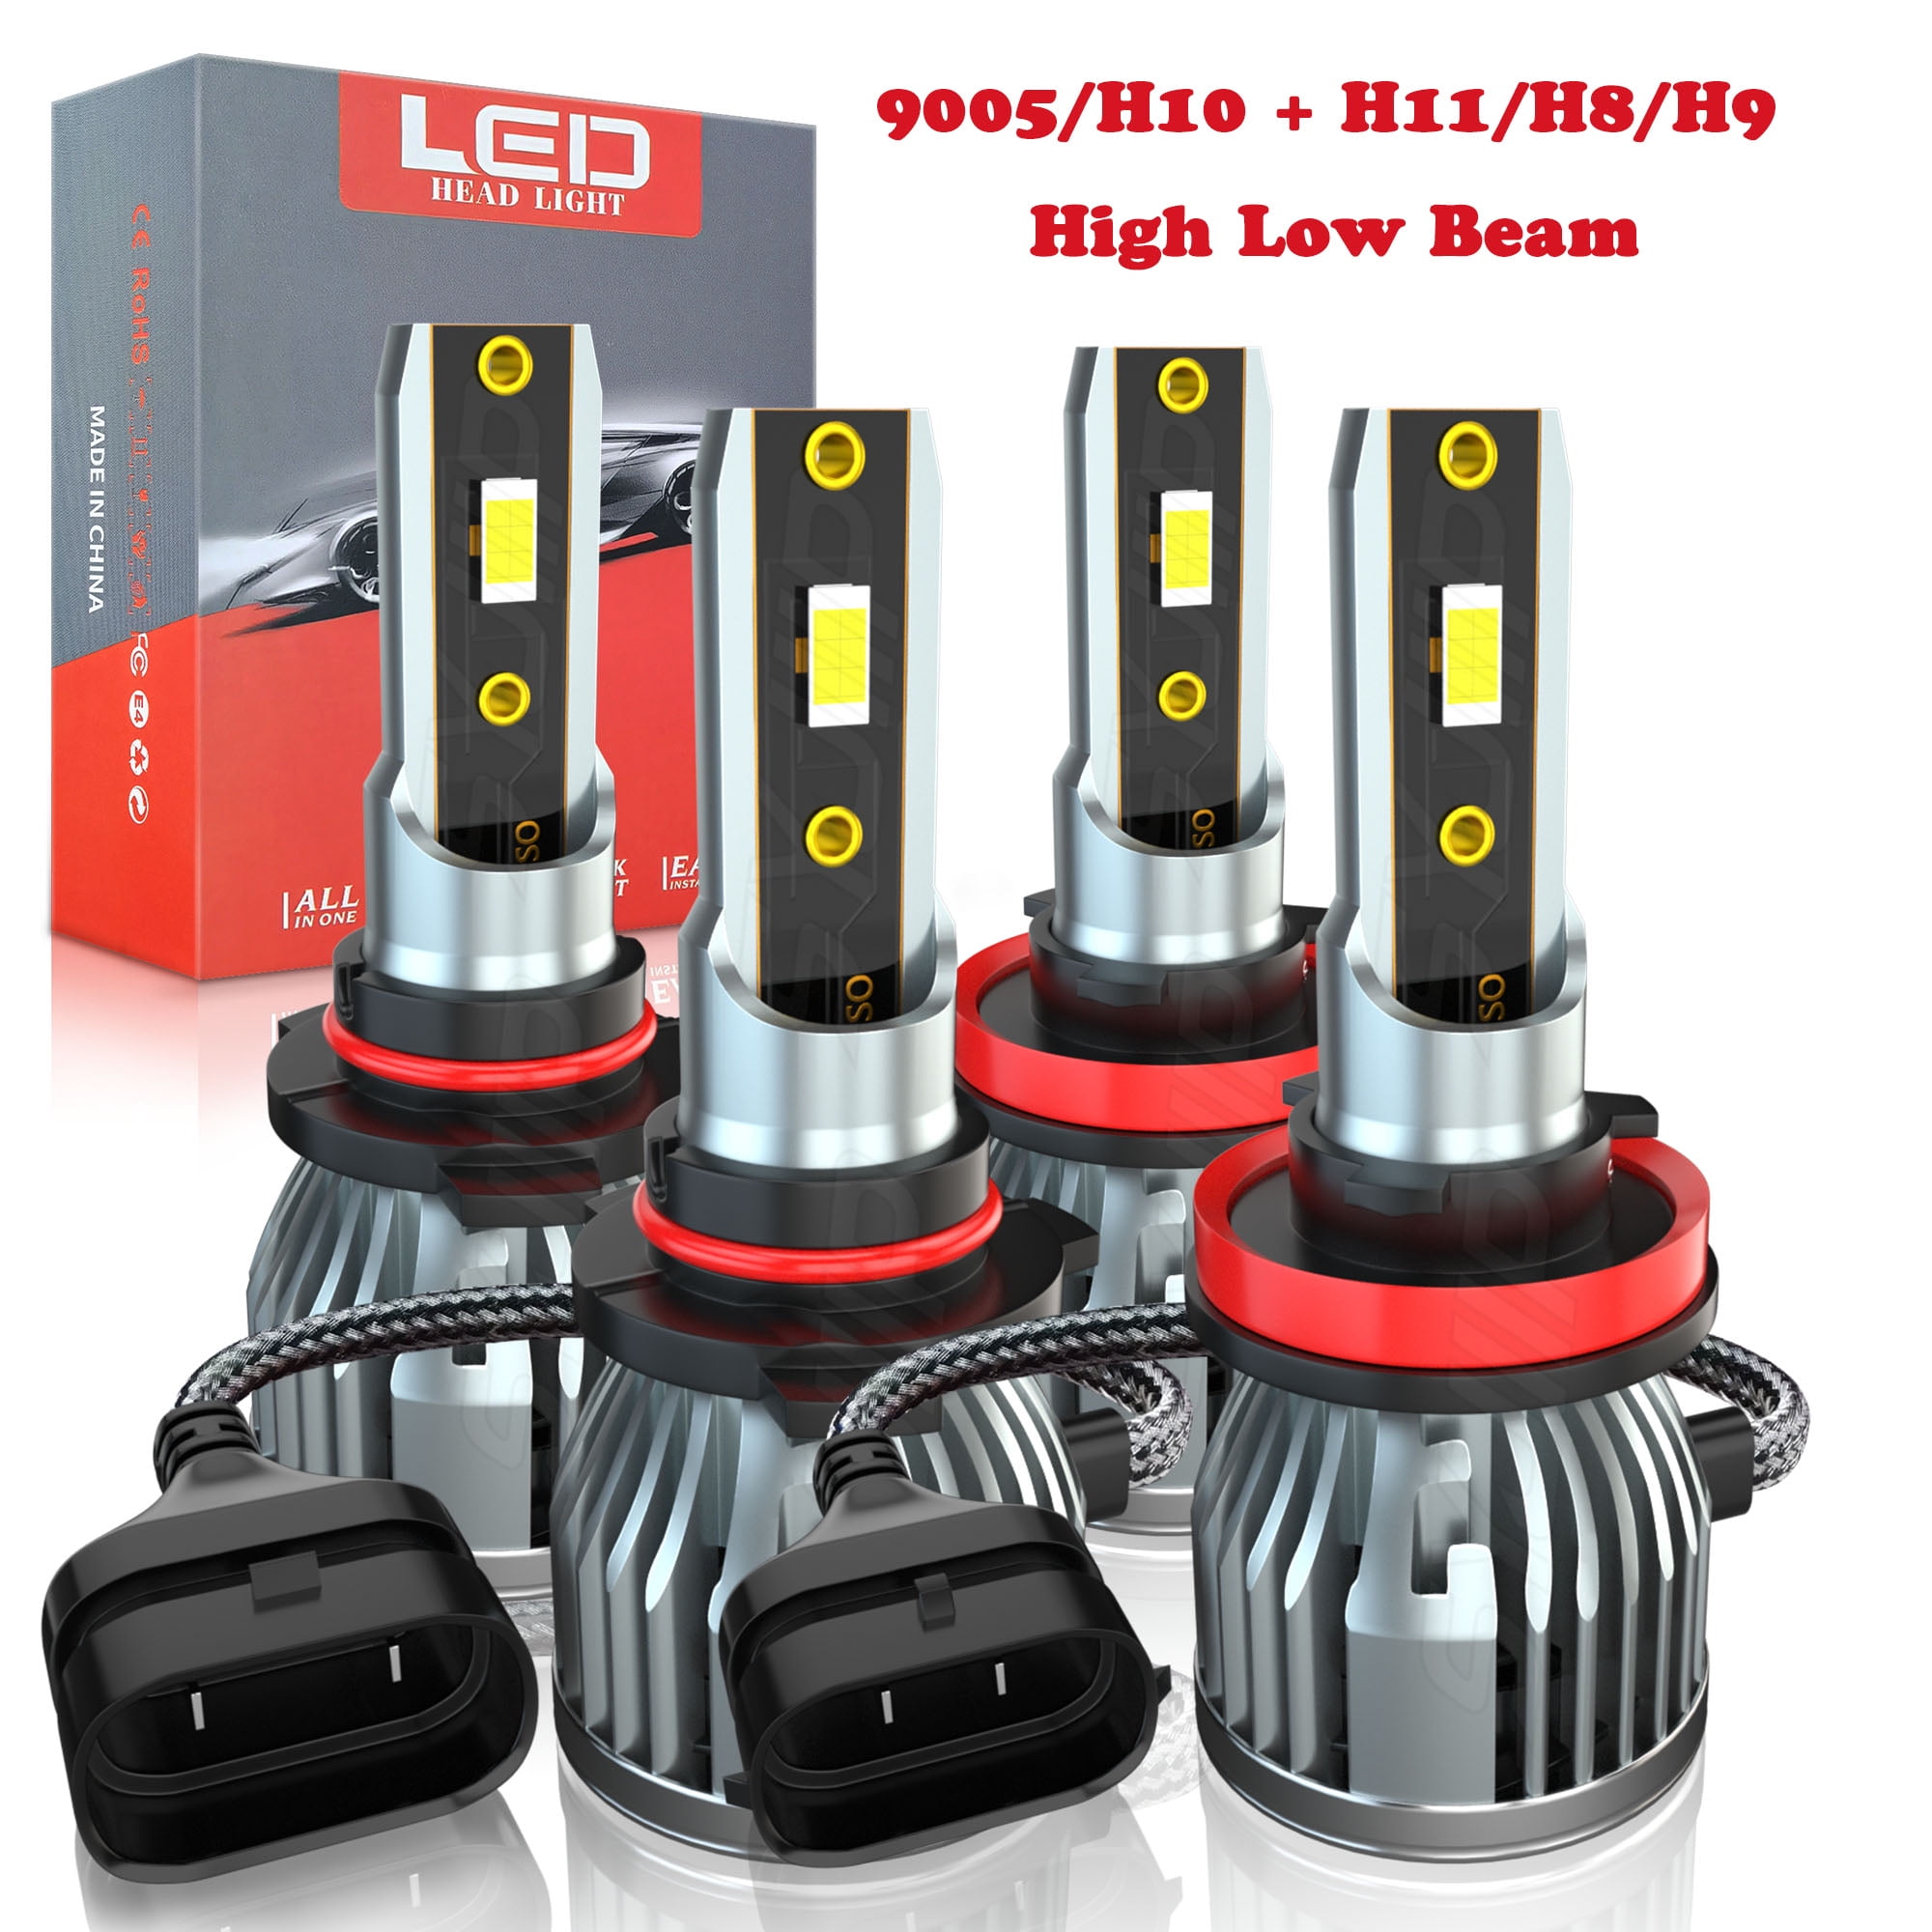 9005 H11 LED Headlight Bulbs 9005 High Beam H11 Low Beam Bulbs